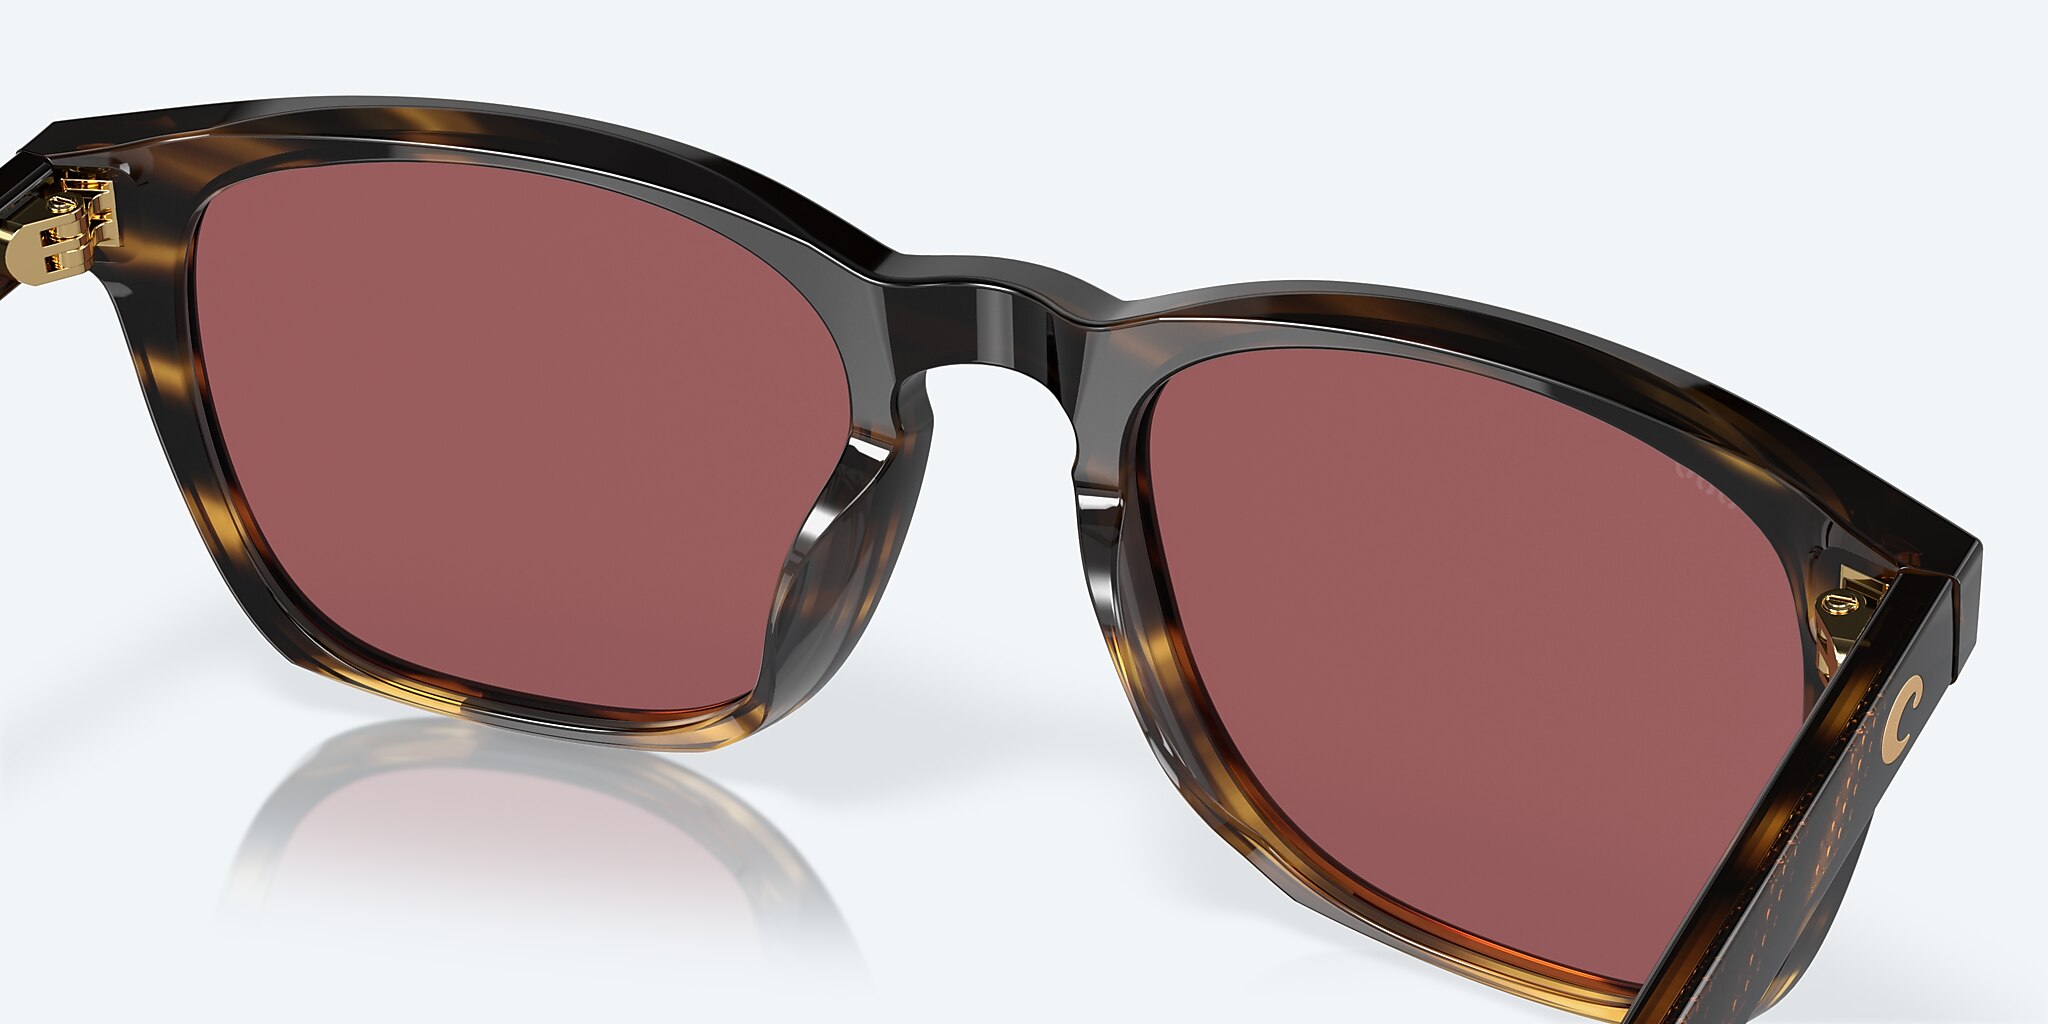 Costa Del Mar Sullivan Sunglasses - Tortoise/ Gold Mirror 580G